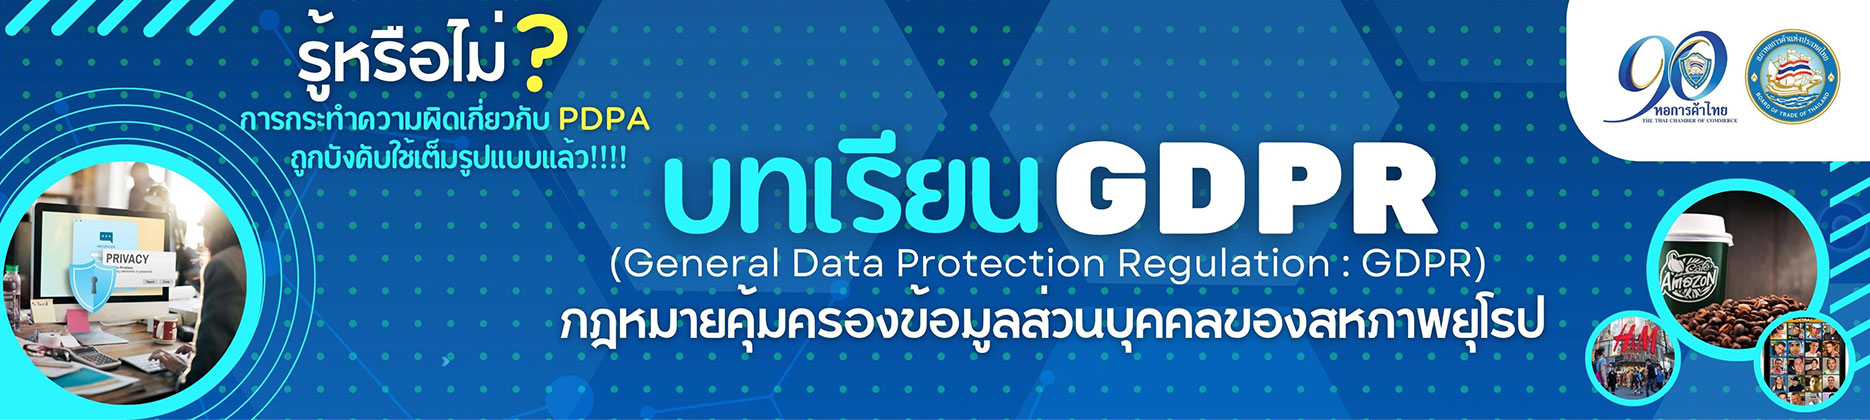 บทเรียน GDPR (General Data Protection Regulation)